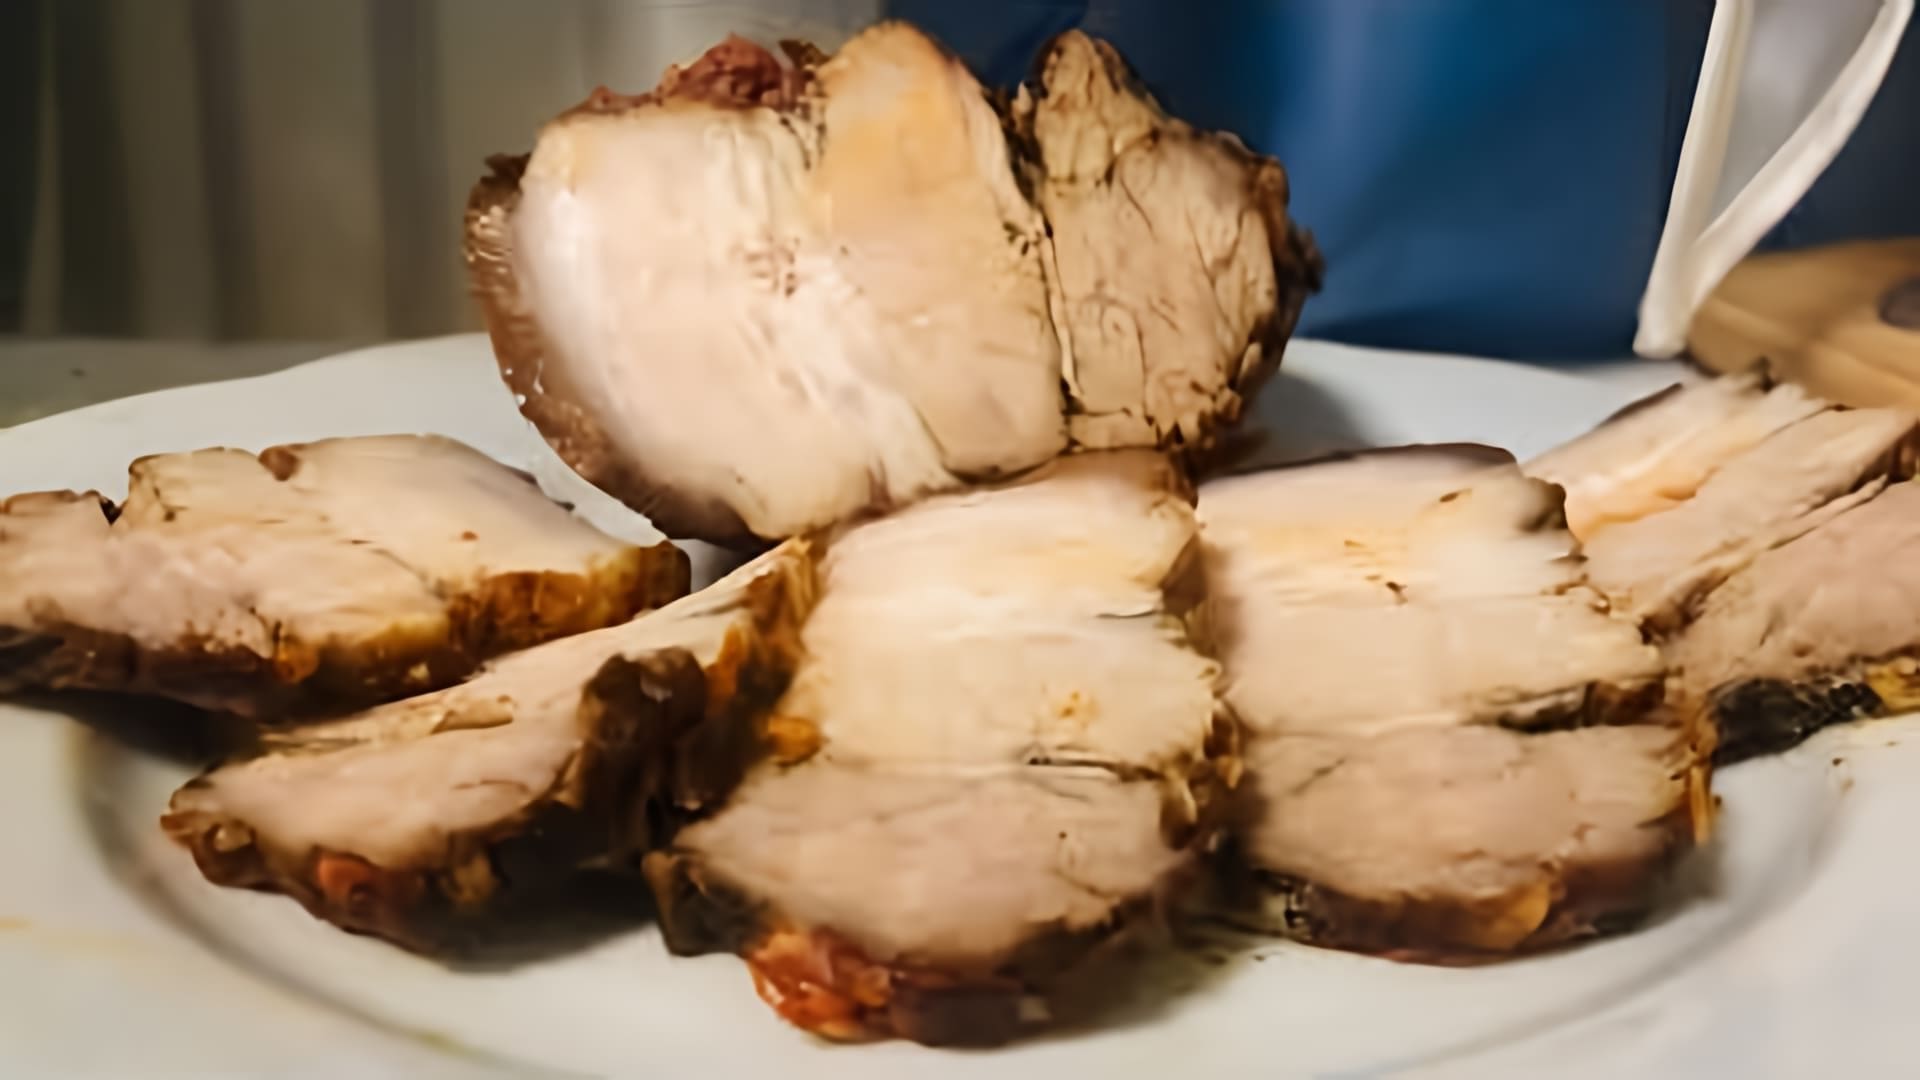 В данном видео демонстрируется рецепт приготовления свиной грудинки в соевом соусе